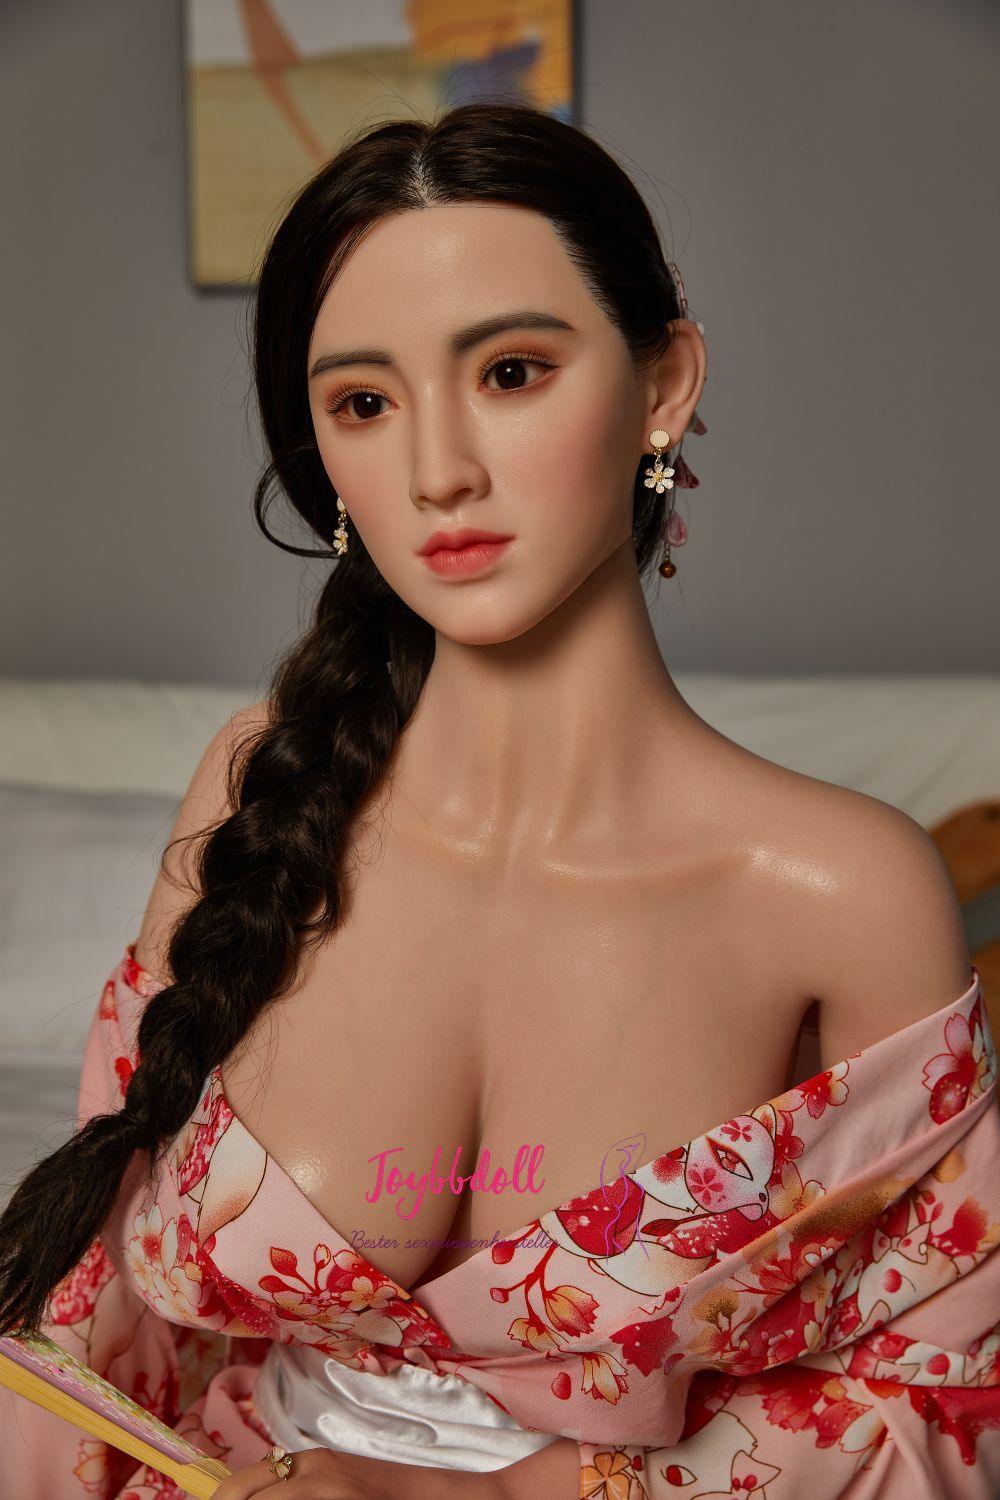 Itoh-Herzenstehlerin(24 Jahre) - Joybbdoll-CST Doll